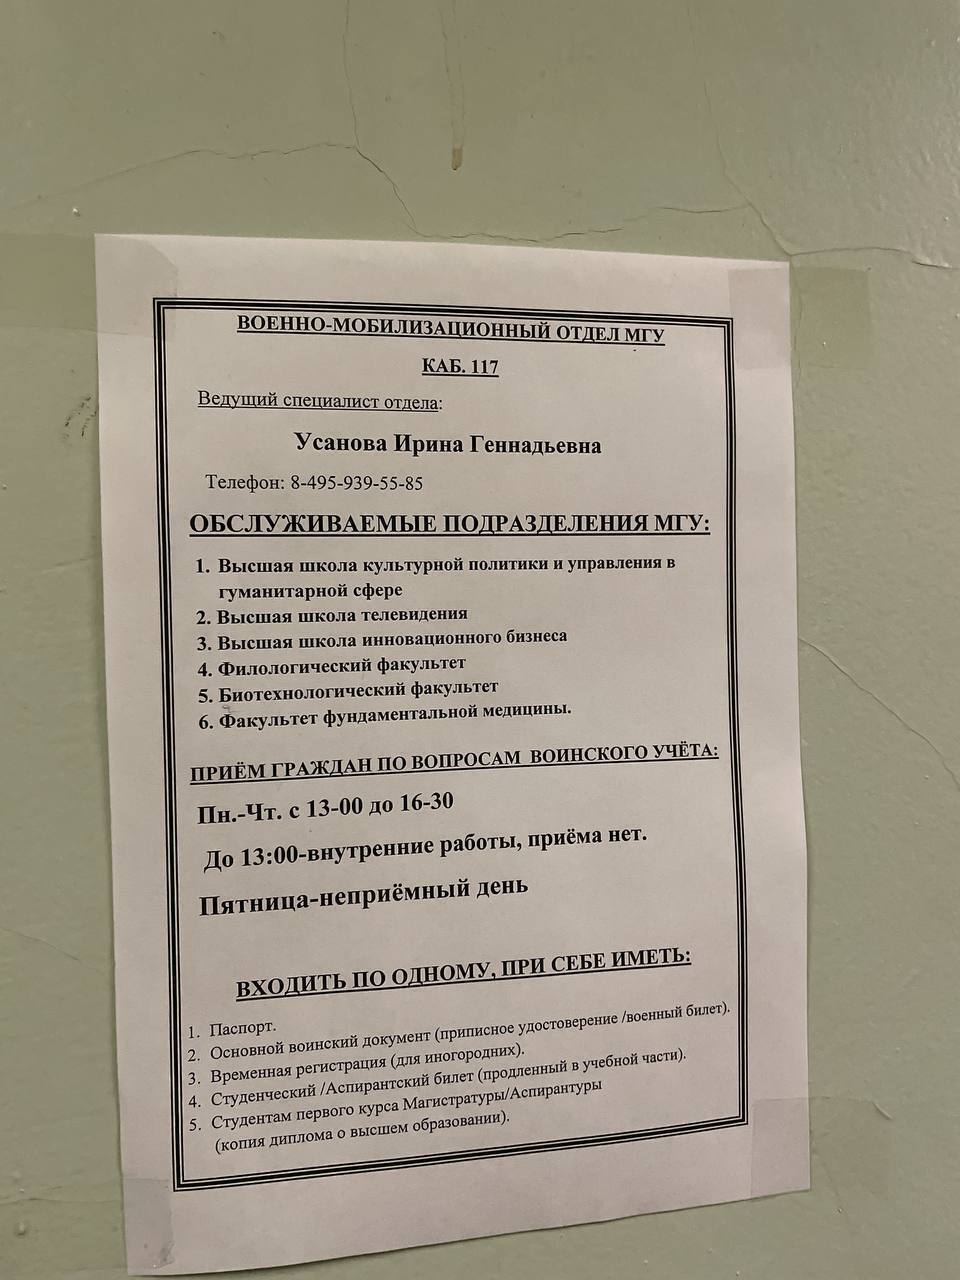 Объявление в Московском государственном университете